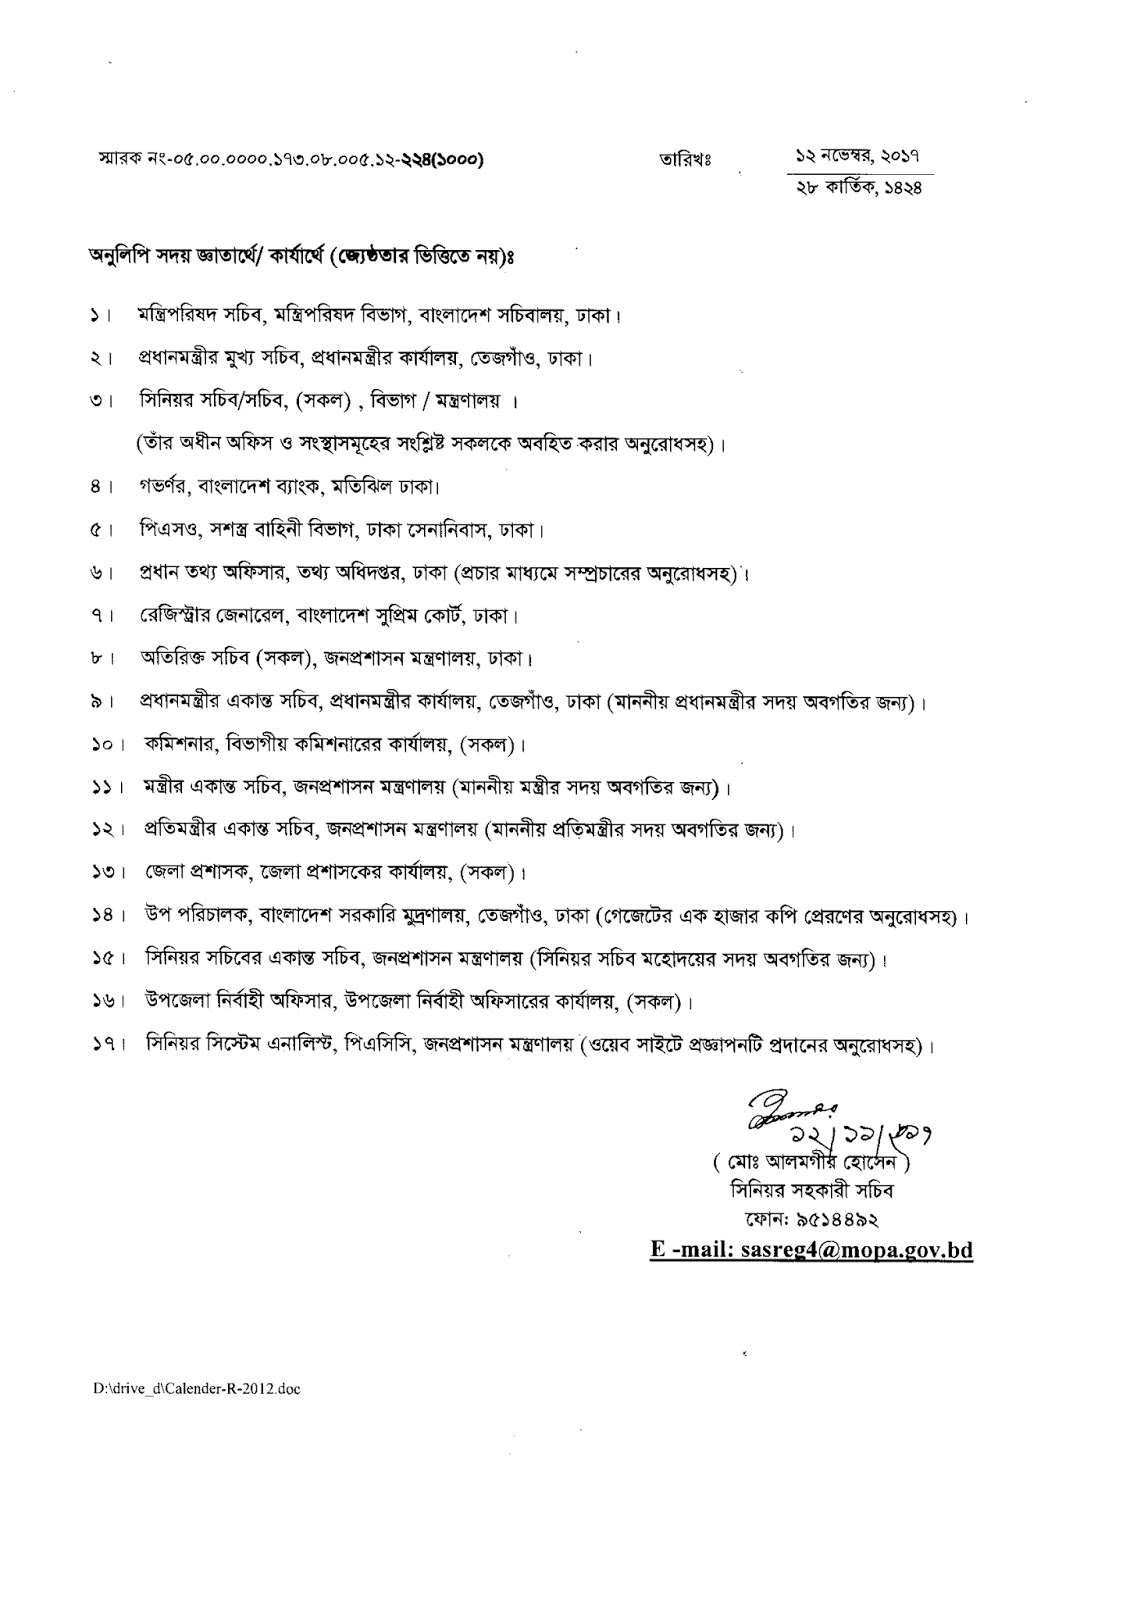 Bangladesh Government holidays list 2018